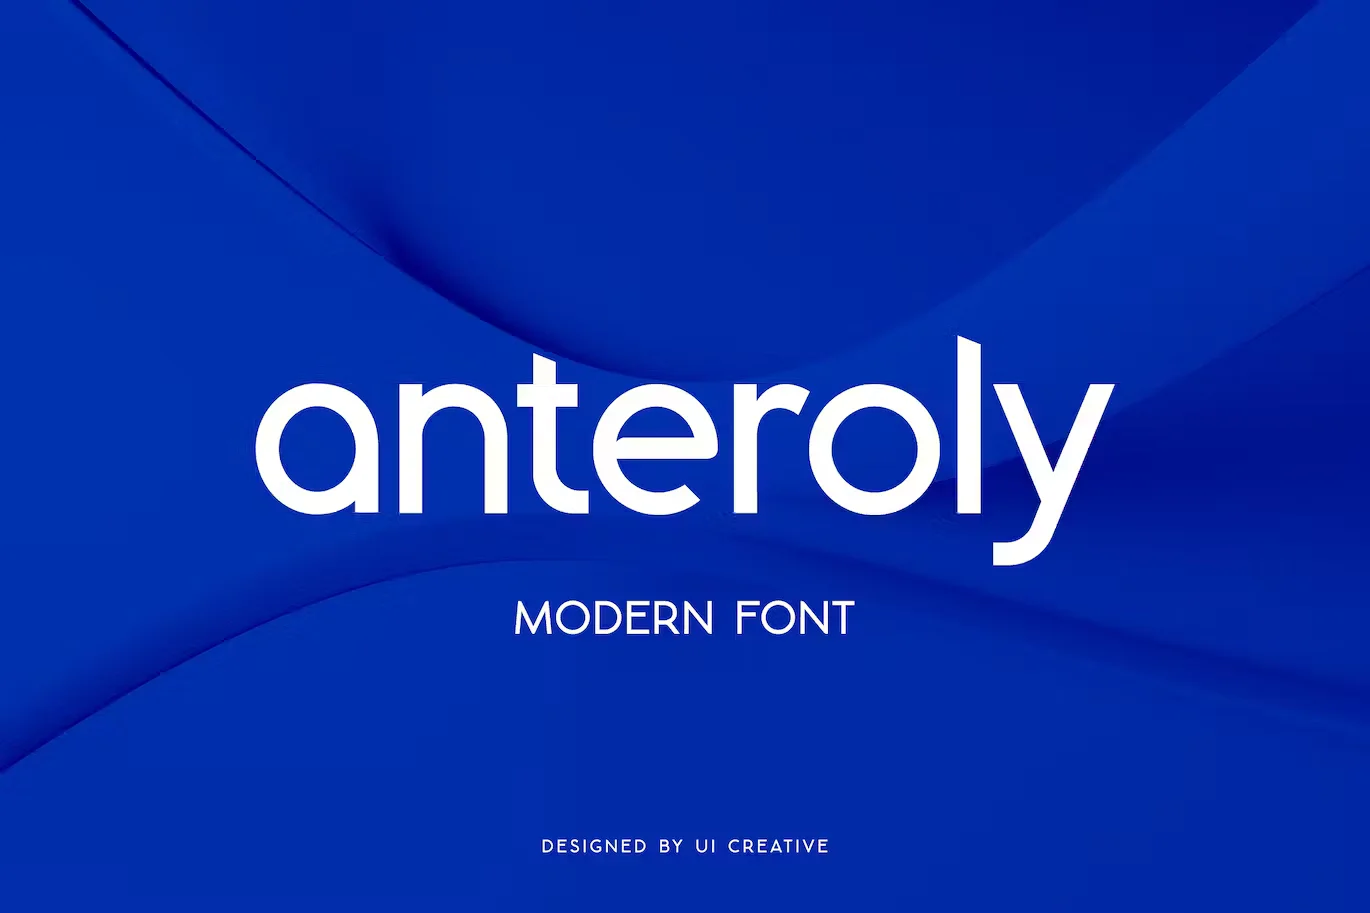 Anteroly Modern Sans Serif Font